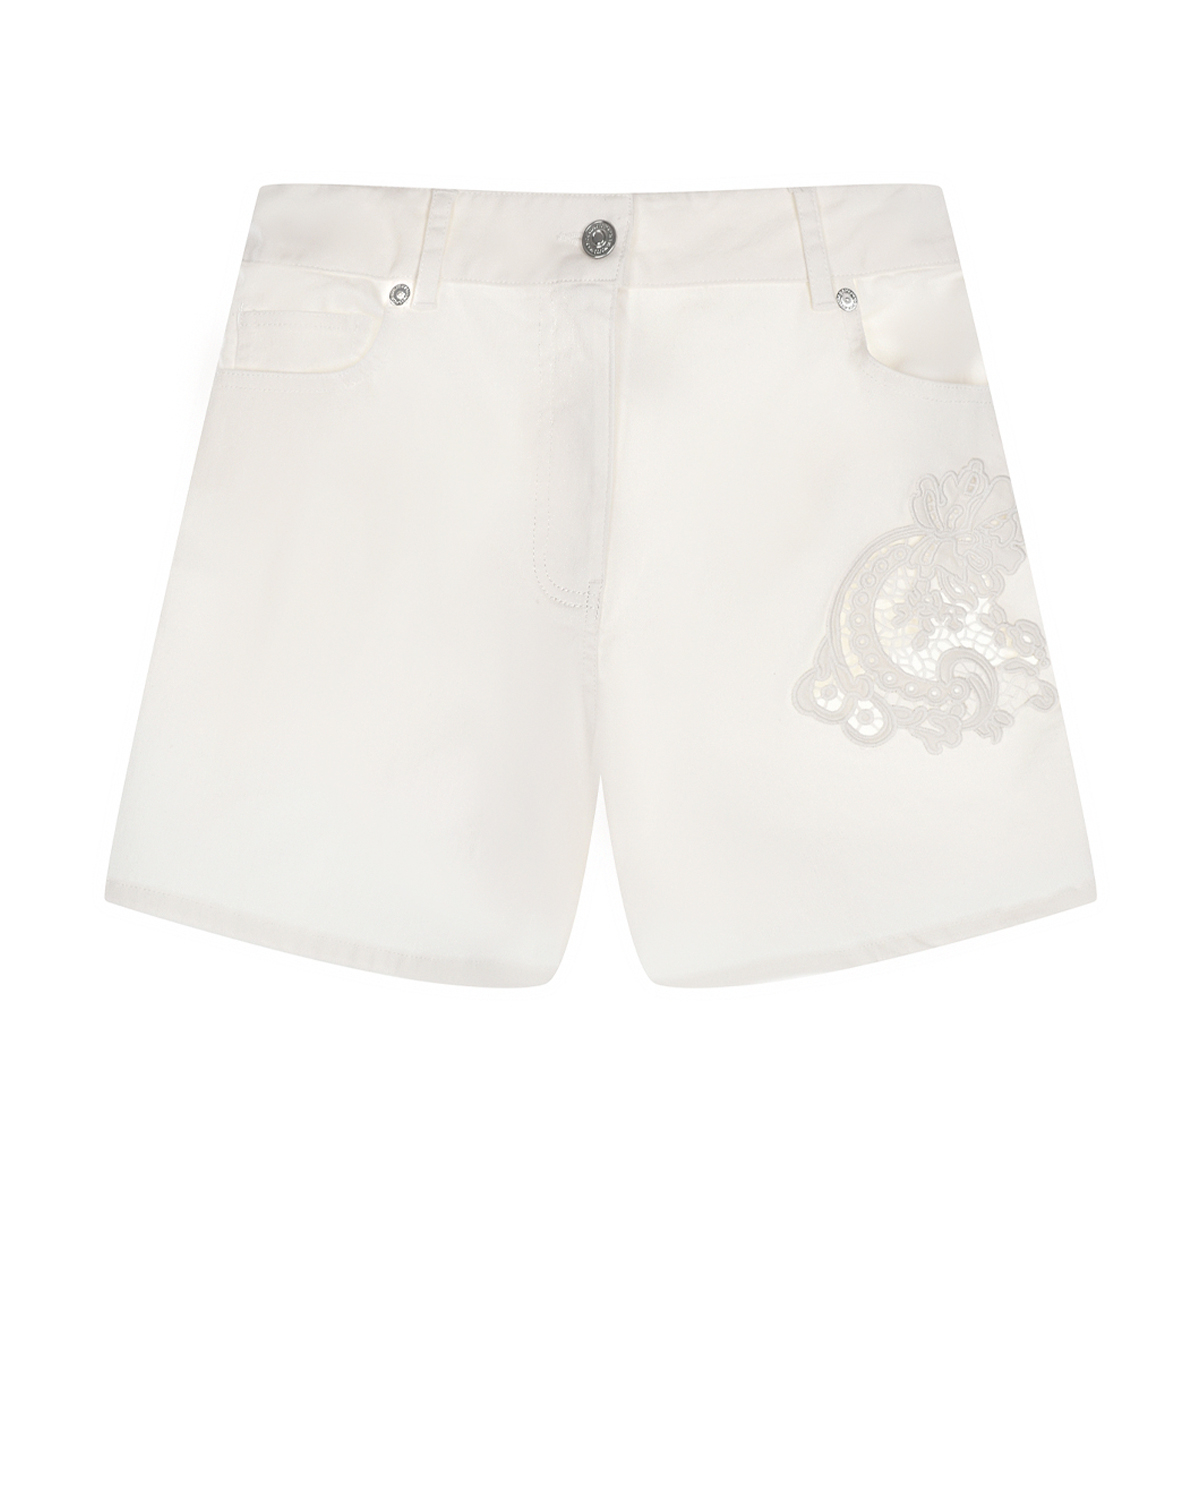 Белые джинсовые шорты с ажурной вышивкой Ermanno Scervino шорты джинсовые белые для девочки button blue 164